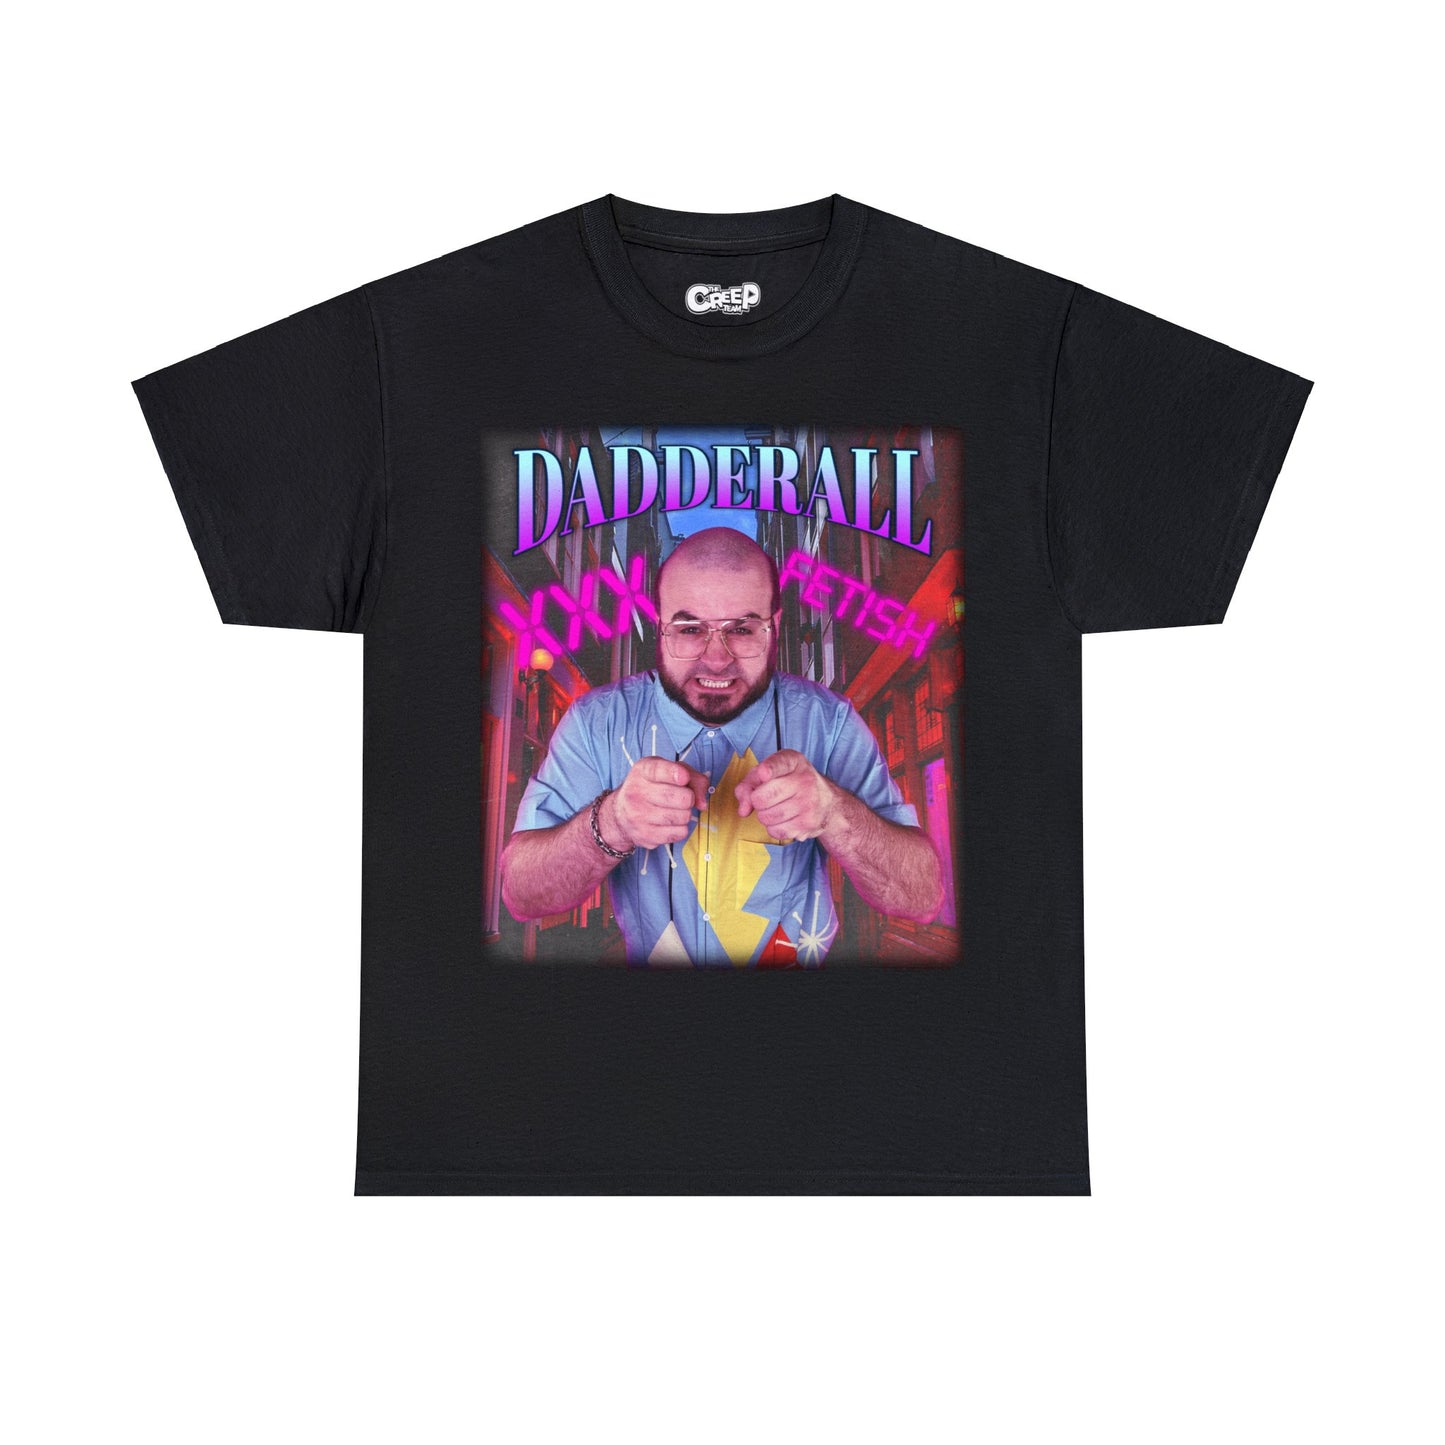 Dadderall District T-Shirt